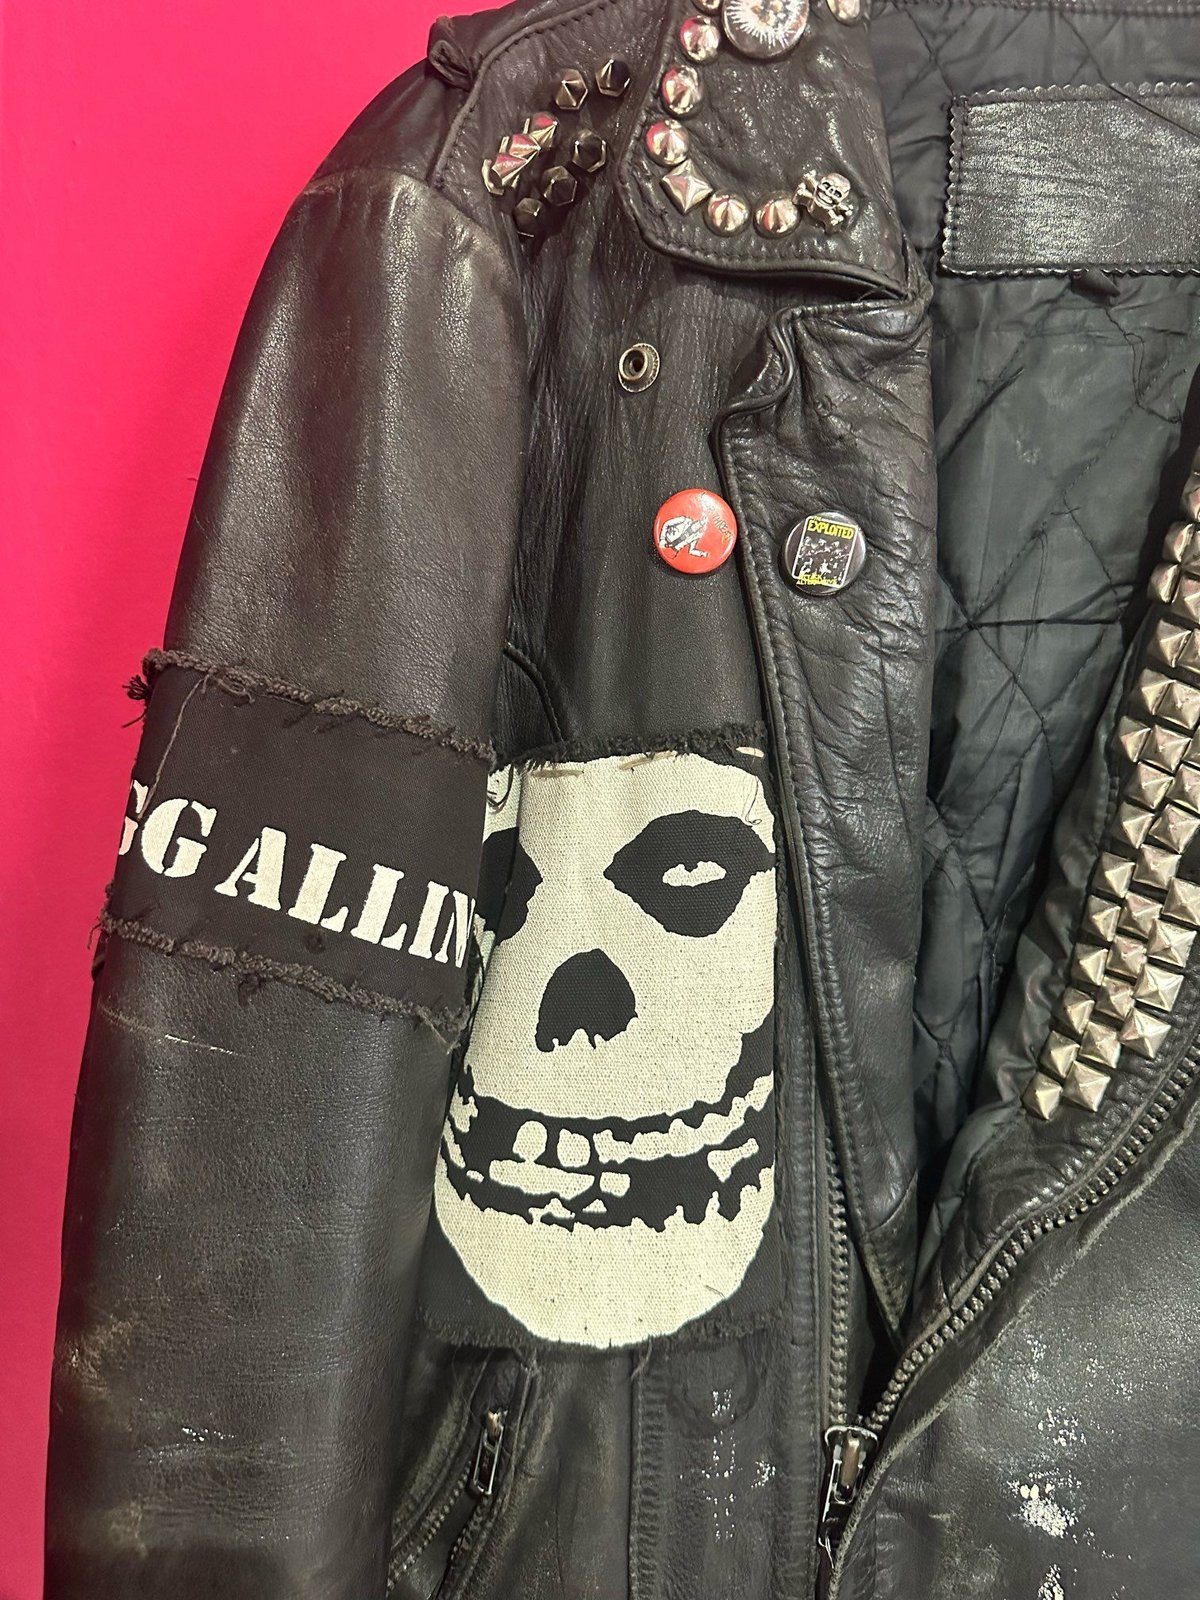 90s punk rock jacket